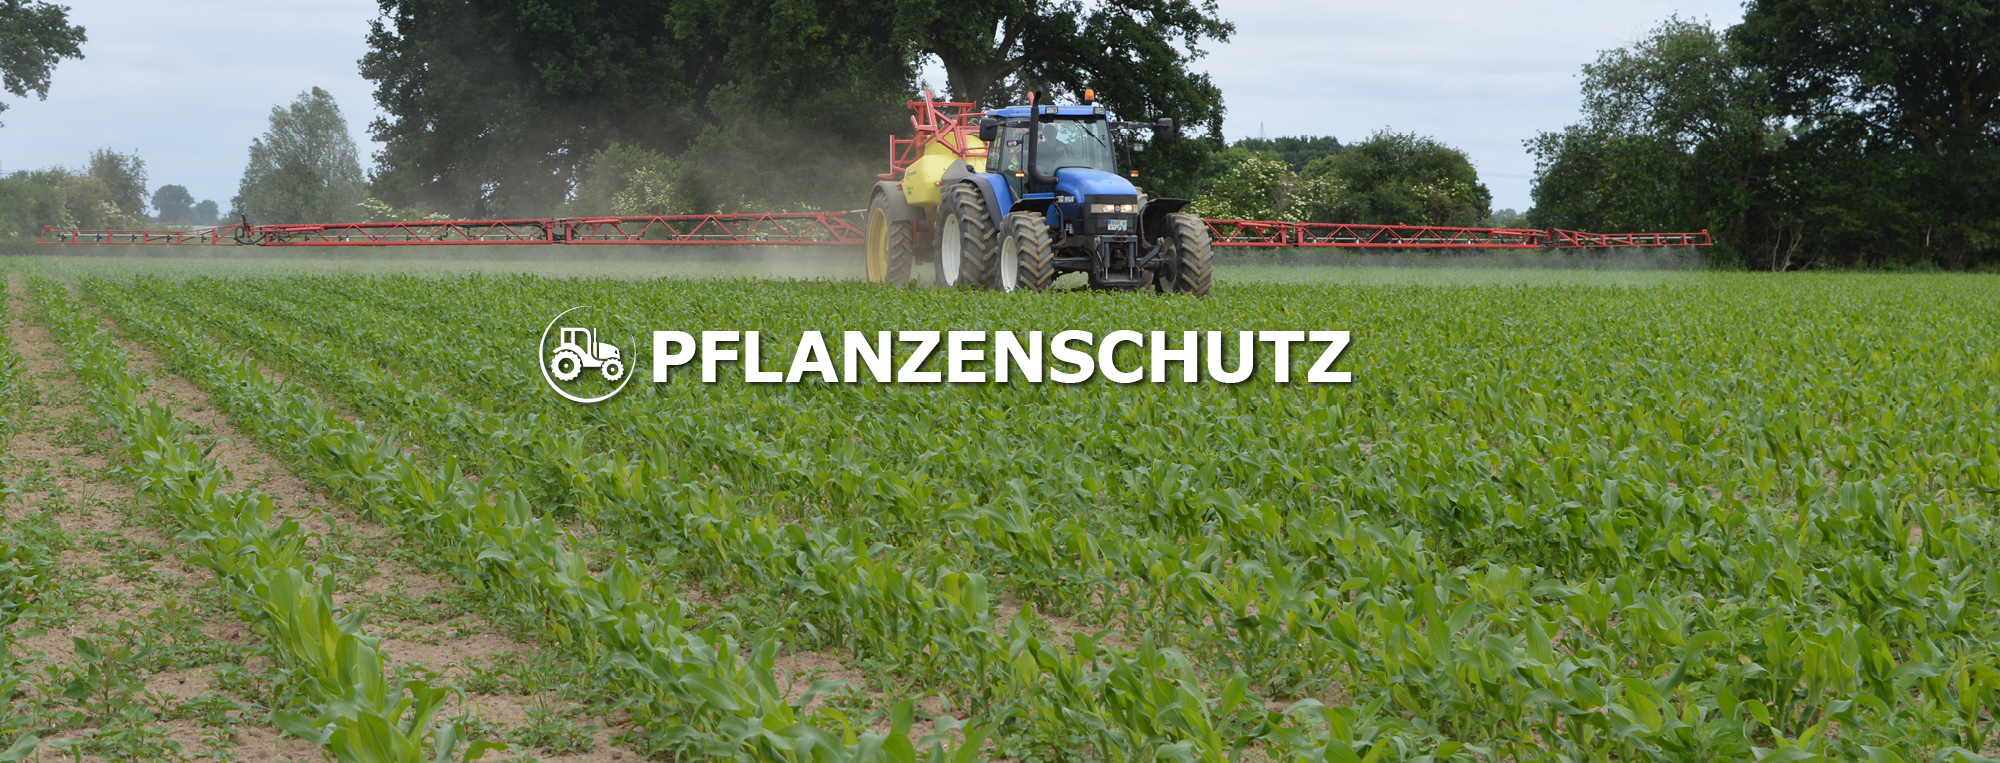 Pflanzenschutz Landwirtschaft